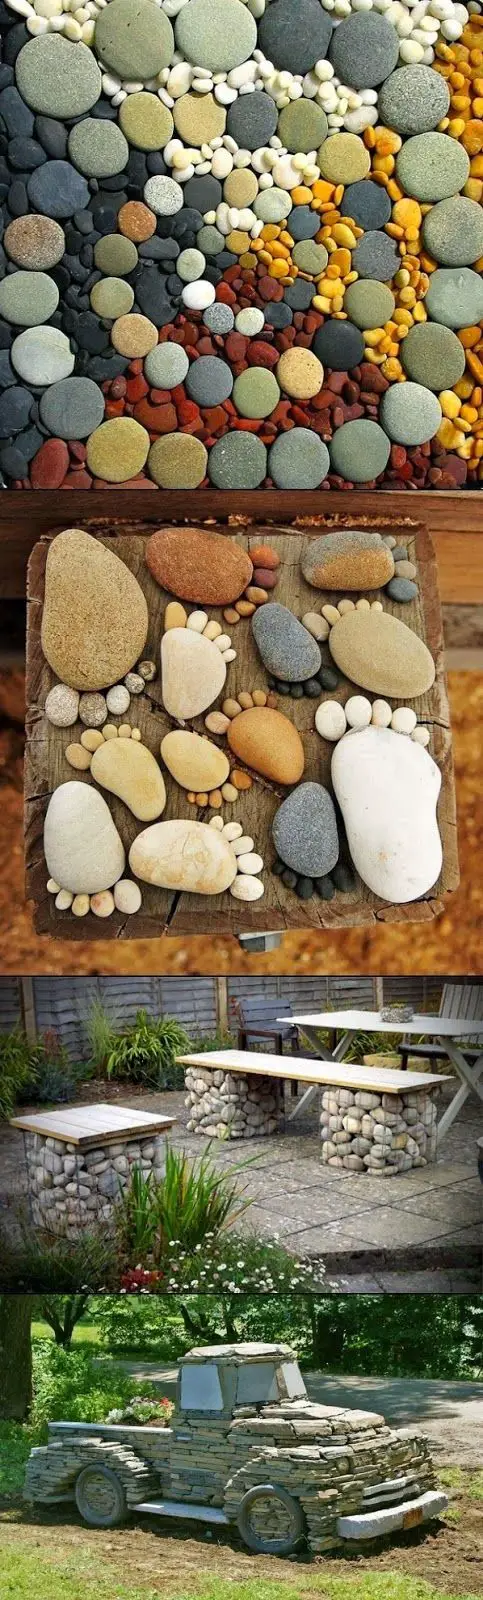 pietre decorative pentru gradina Decorative stone garden landscaping ideas 9